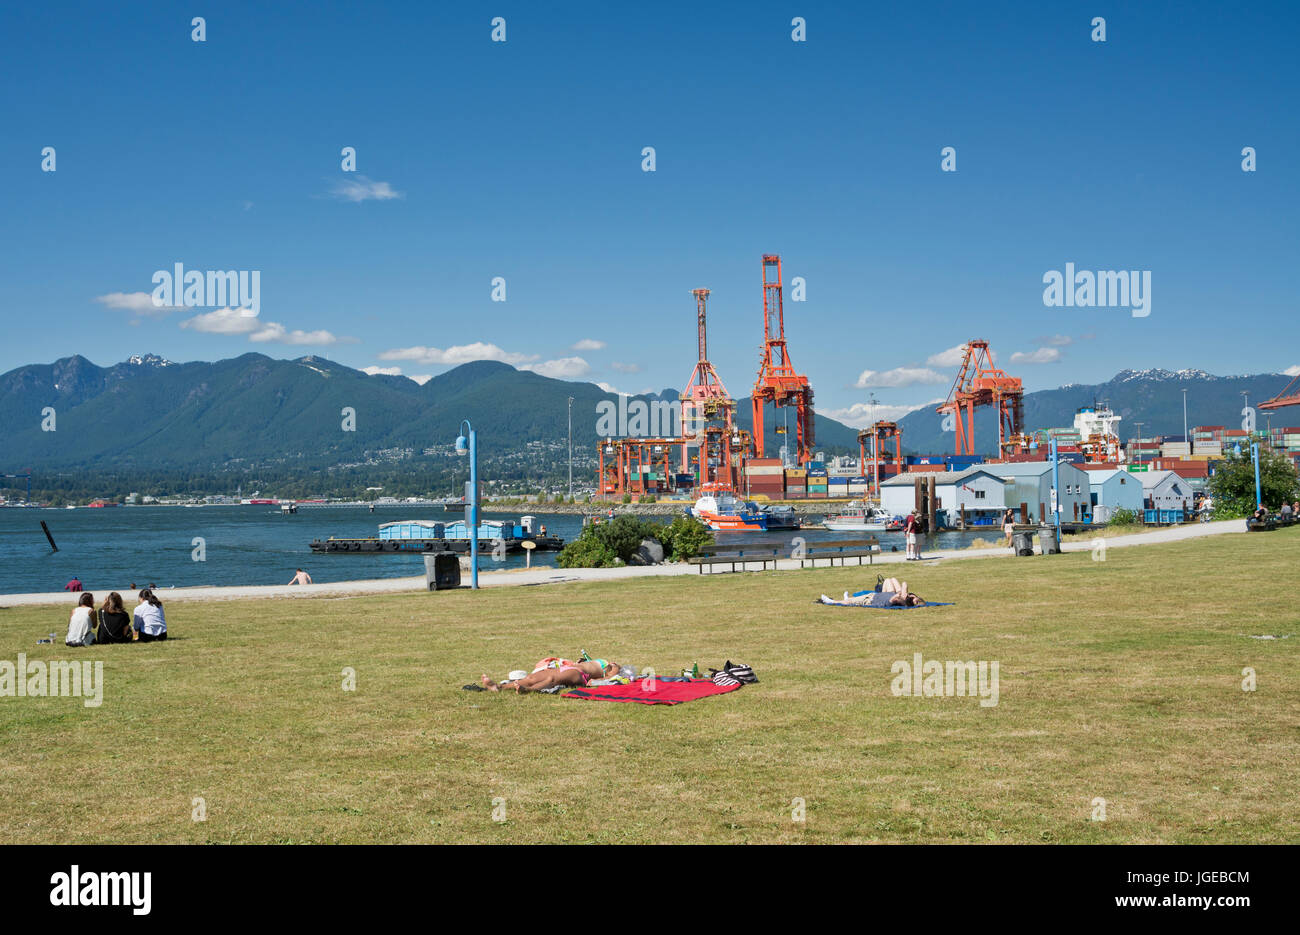 Krabben Sie-Park in Vancouver BC-Leute zum Sonnenbaden und genießen den Blick auf das Wasser.  Laderampen am Hafen von Vancouver. Stockfoto